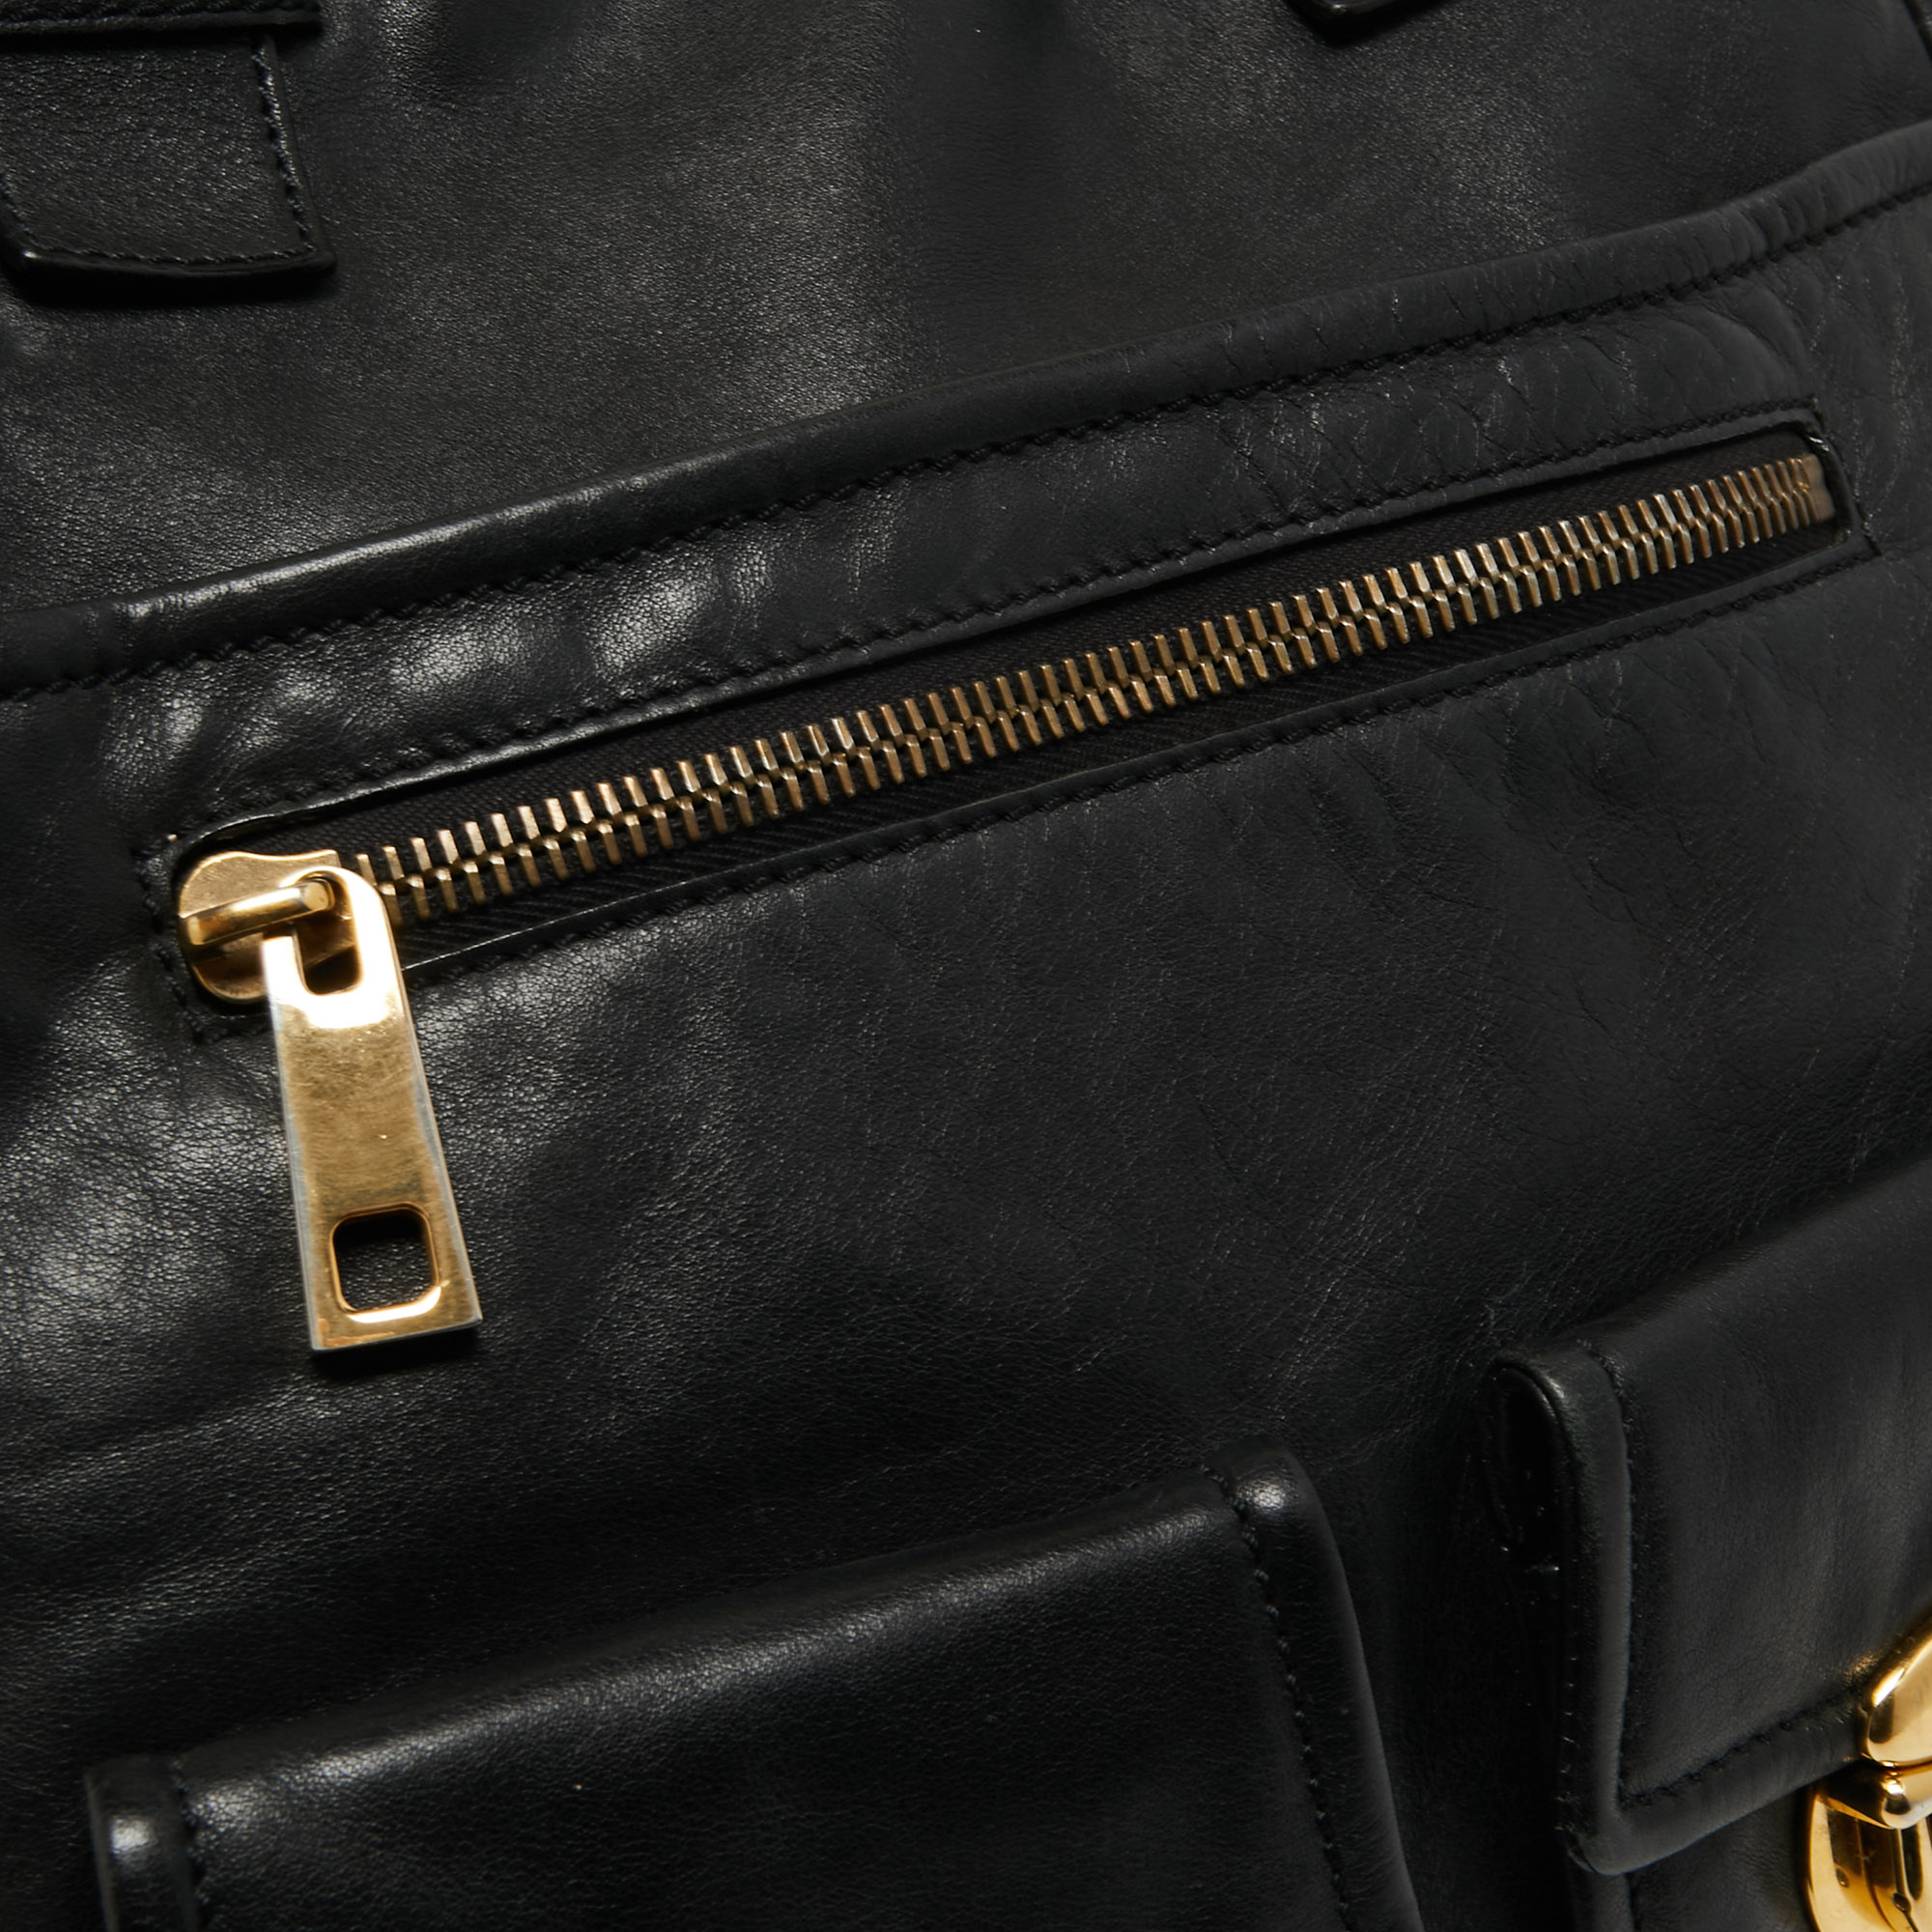 Marc Jacobs Black Leather Multipocket Shoulder Bag